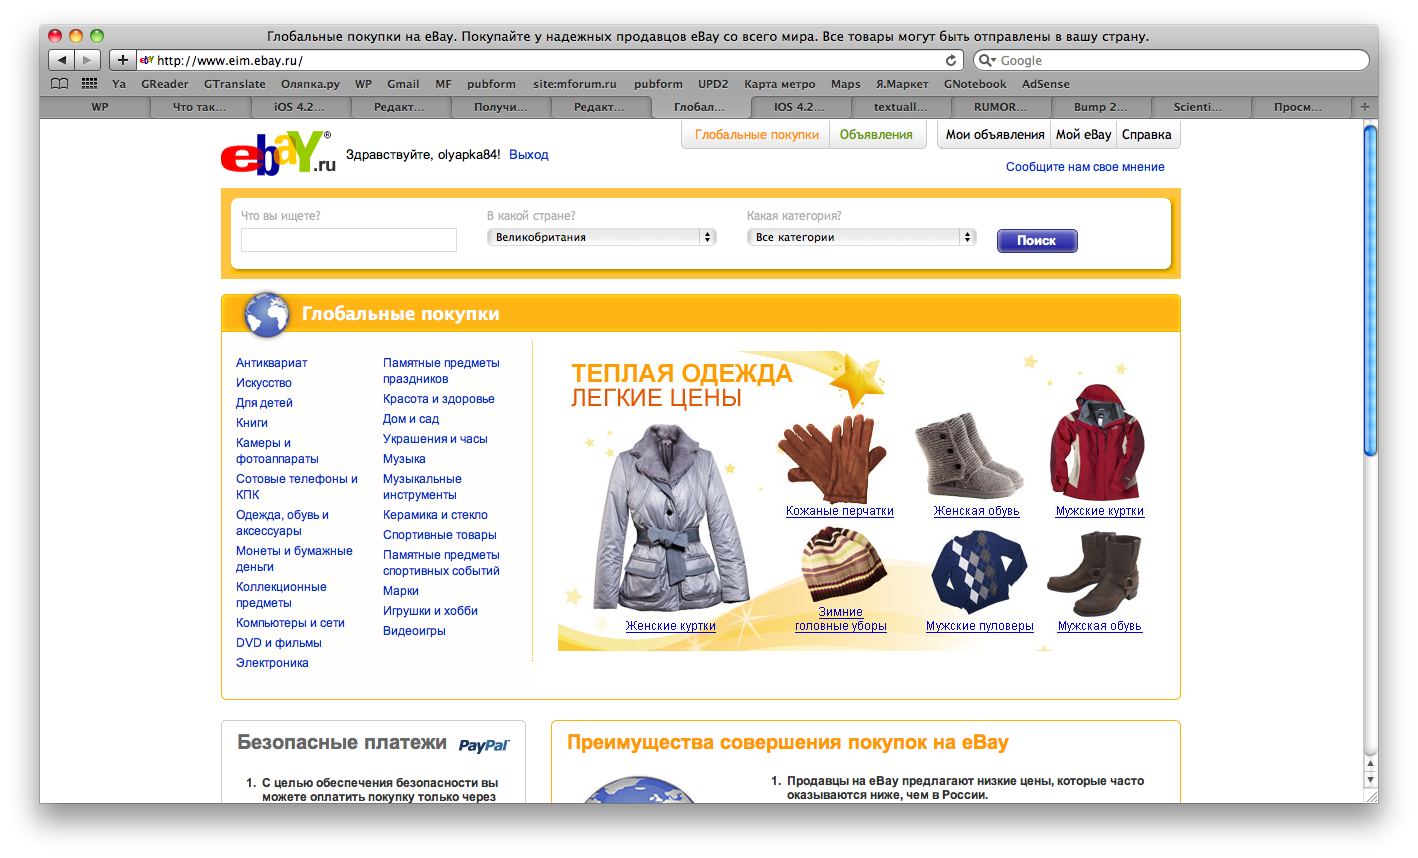 Ebay com itm. EBAY интернет магазин. ЕВАУ интернет магазин. EBAY интернет магазин на русском.